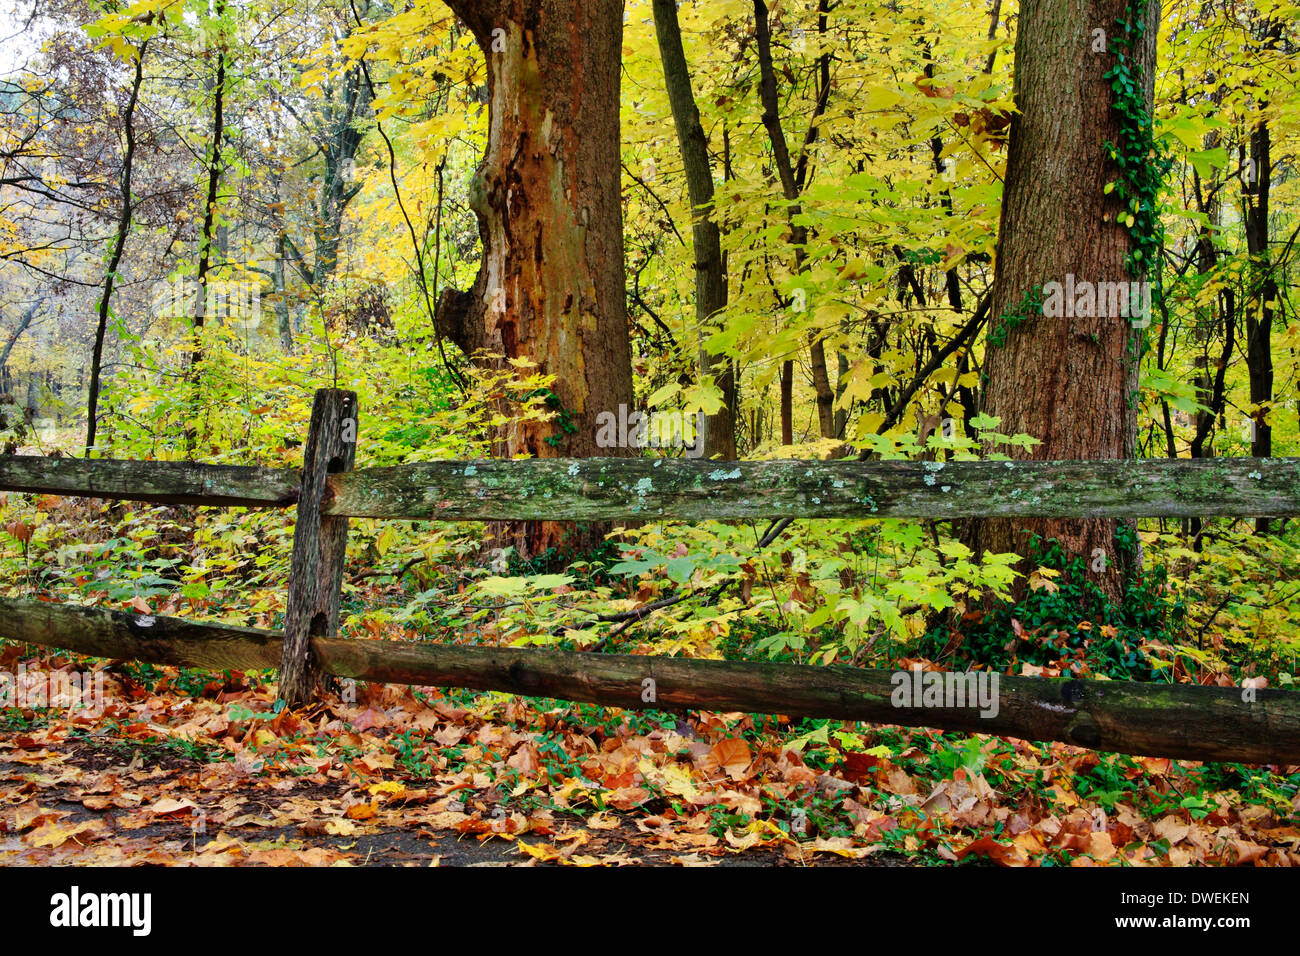 Colorato Caduta delle Foglie e una vecchia staccionata in legno in un giorno di pioggia in autunno al parco dei Boschi di Sharon, Southwestern Ohio, Stati Uniti d'America Foto Stock